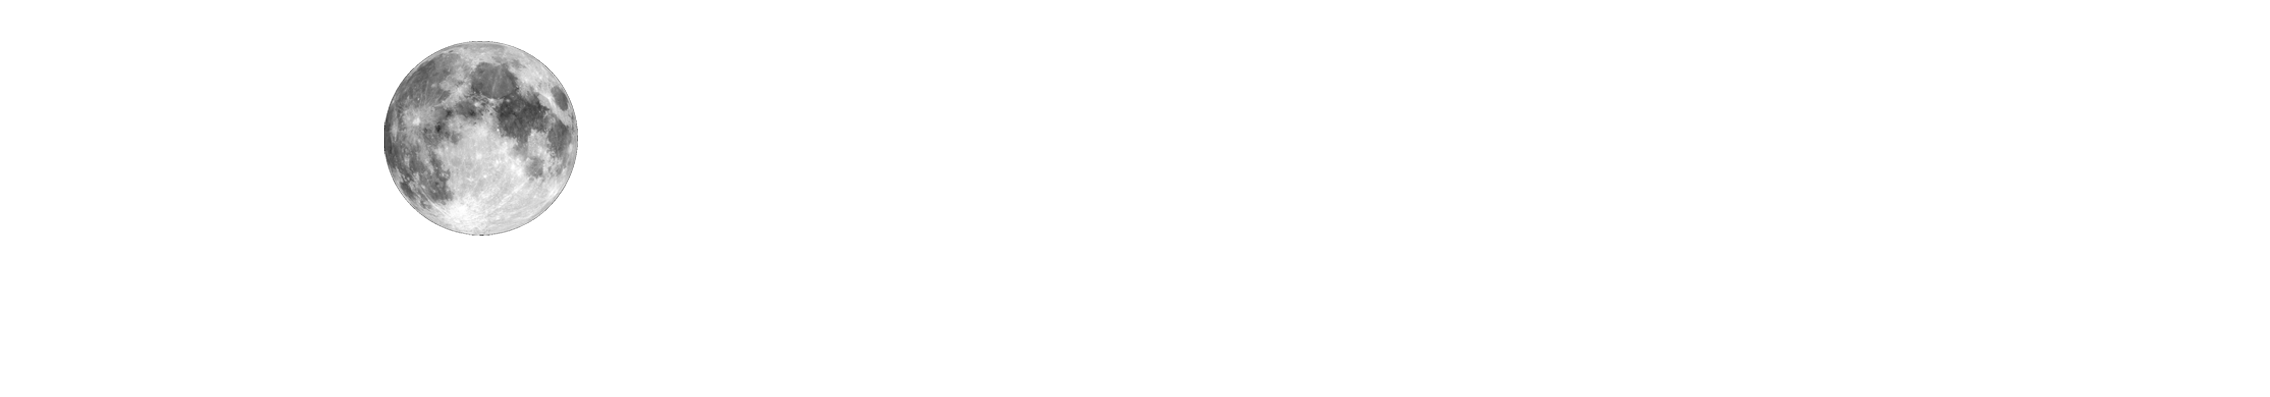 MONDLICHT Events - Logo